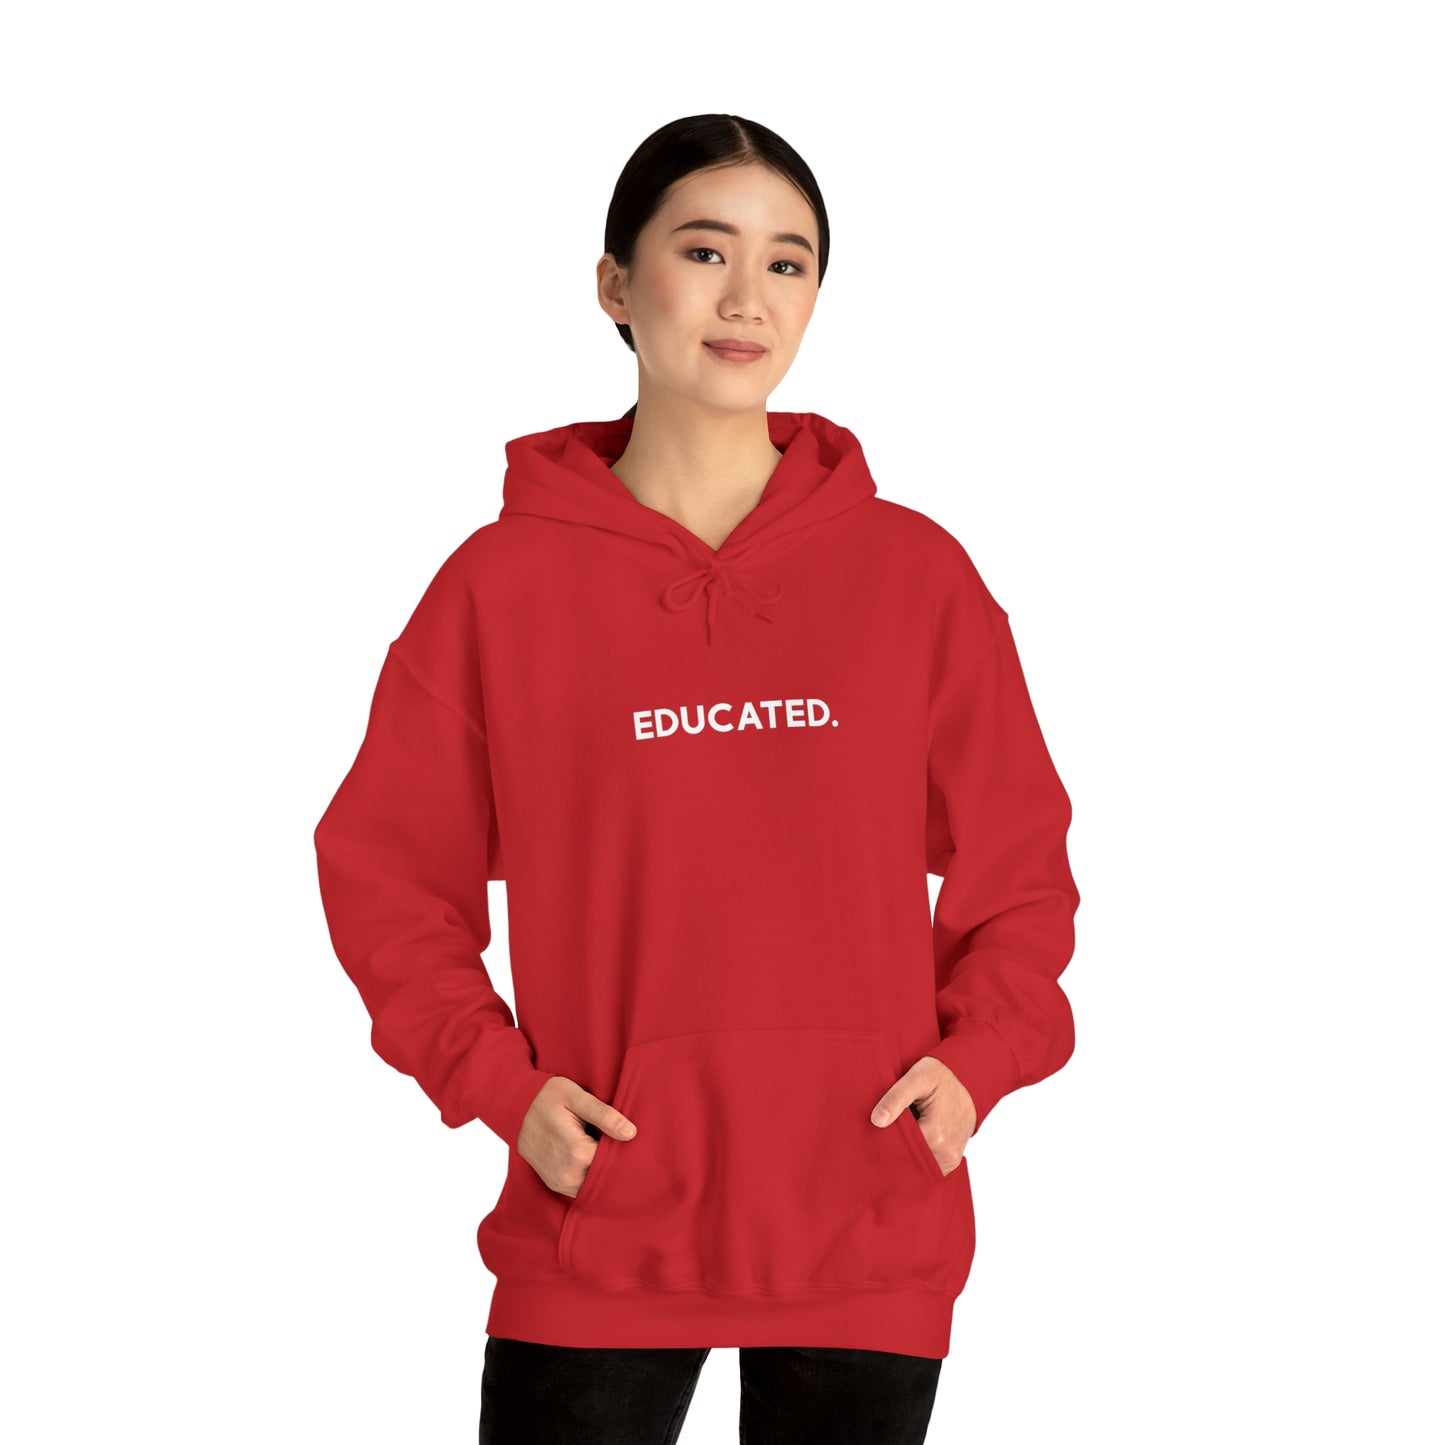 "Educated" Hoodie